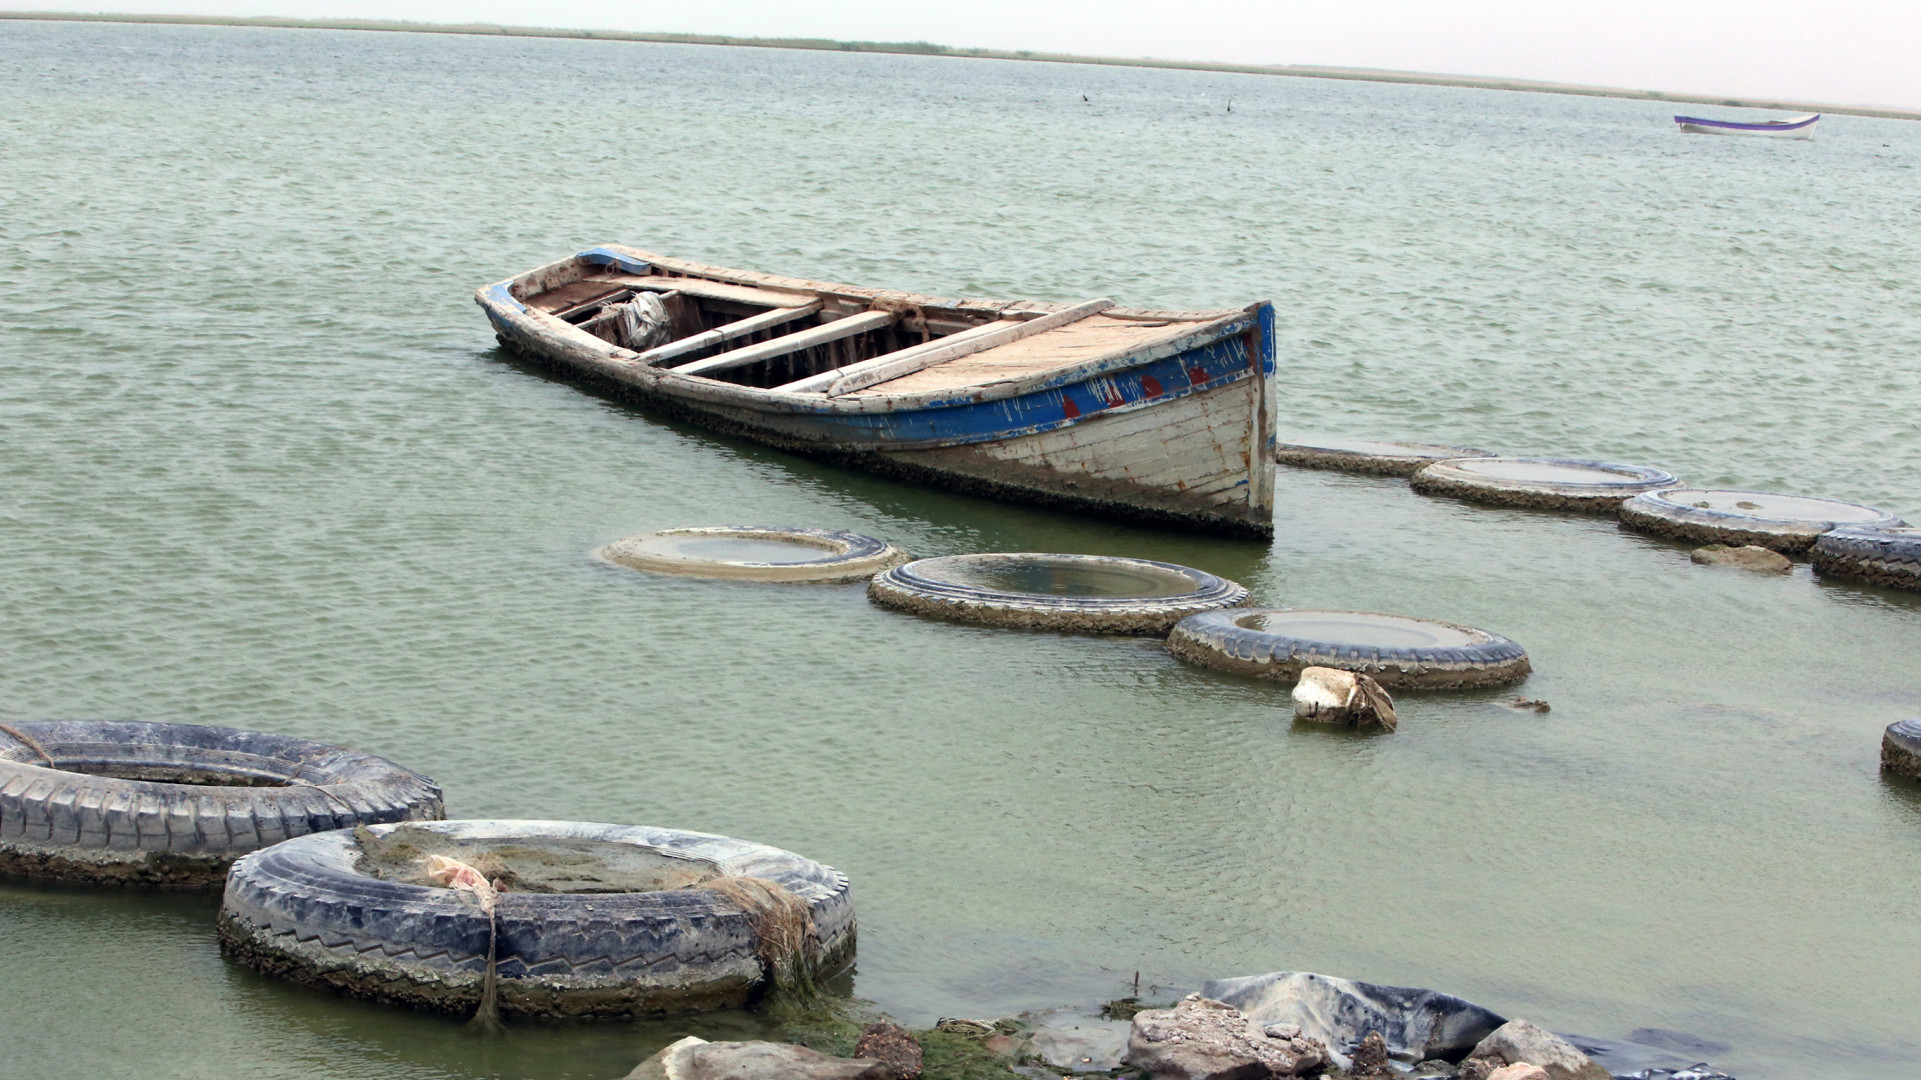  "دون اهتمام".. نفوق الأسماك في ثاني كبريات بحيرات العراق